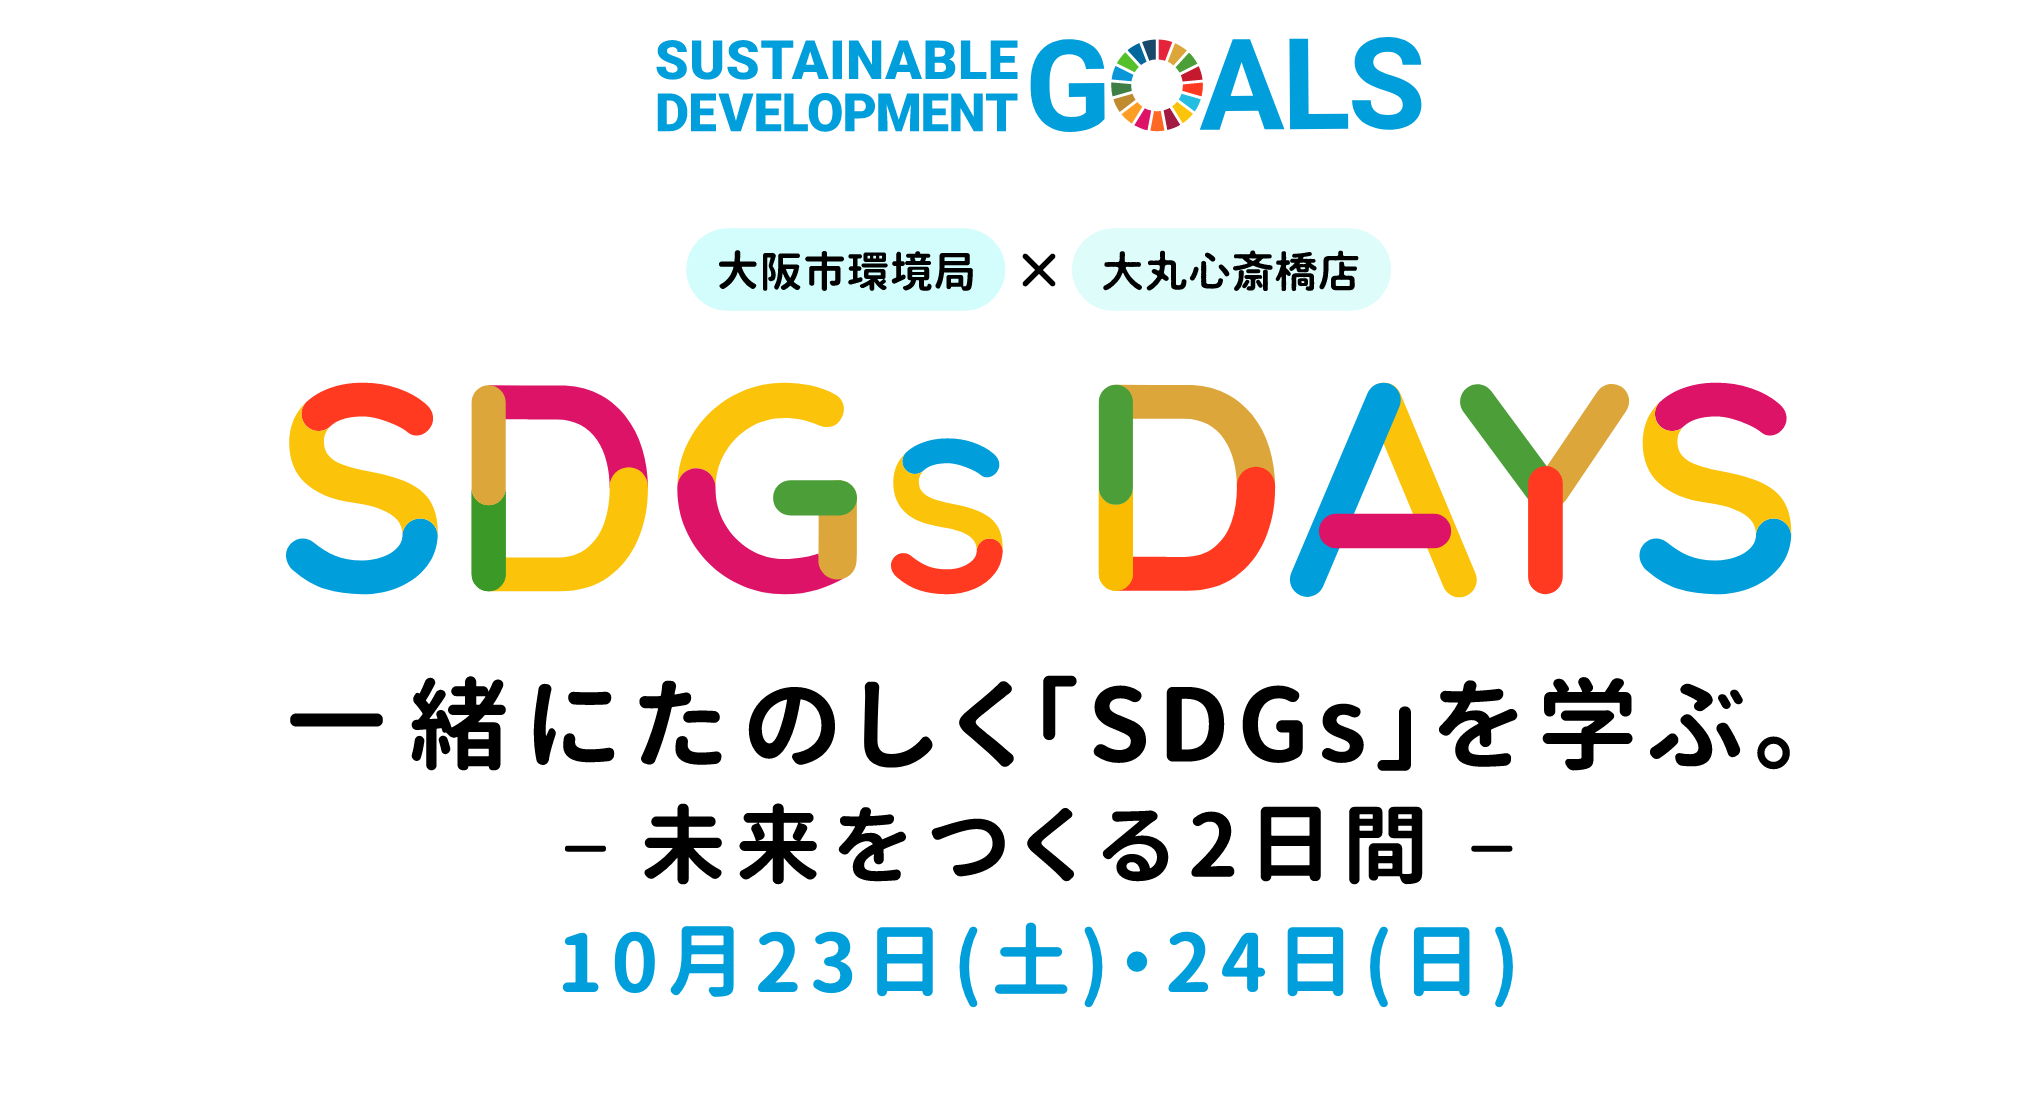 大阪市環境局 × 大丸心斎橋店 SDGs DAYS 一緒にたのしく「SDGs」を学ぶ。- 未来をつくる2日間 - 10月23日(土)・24日(日)